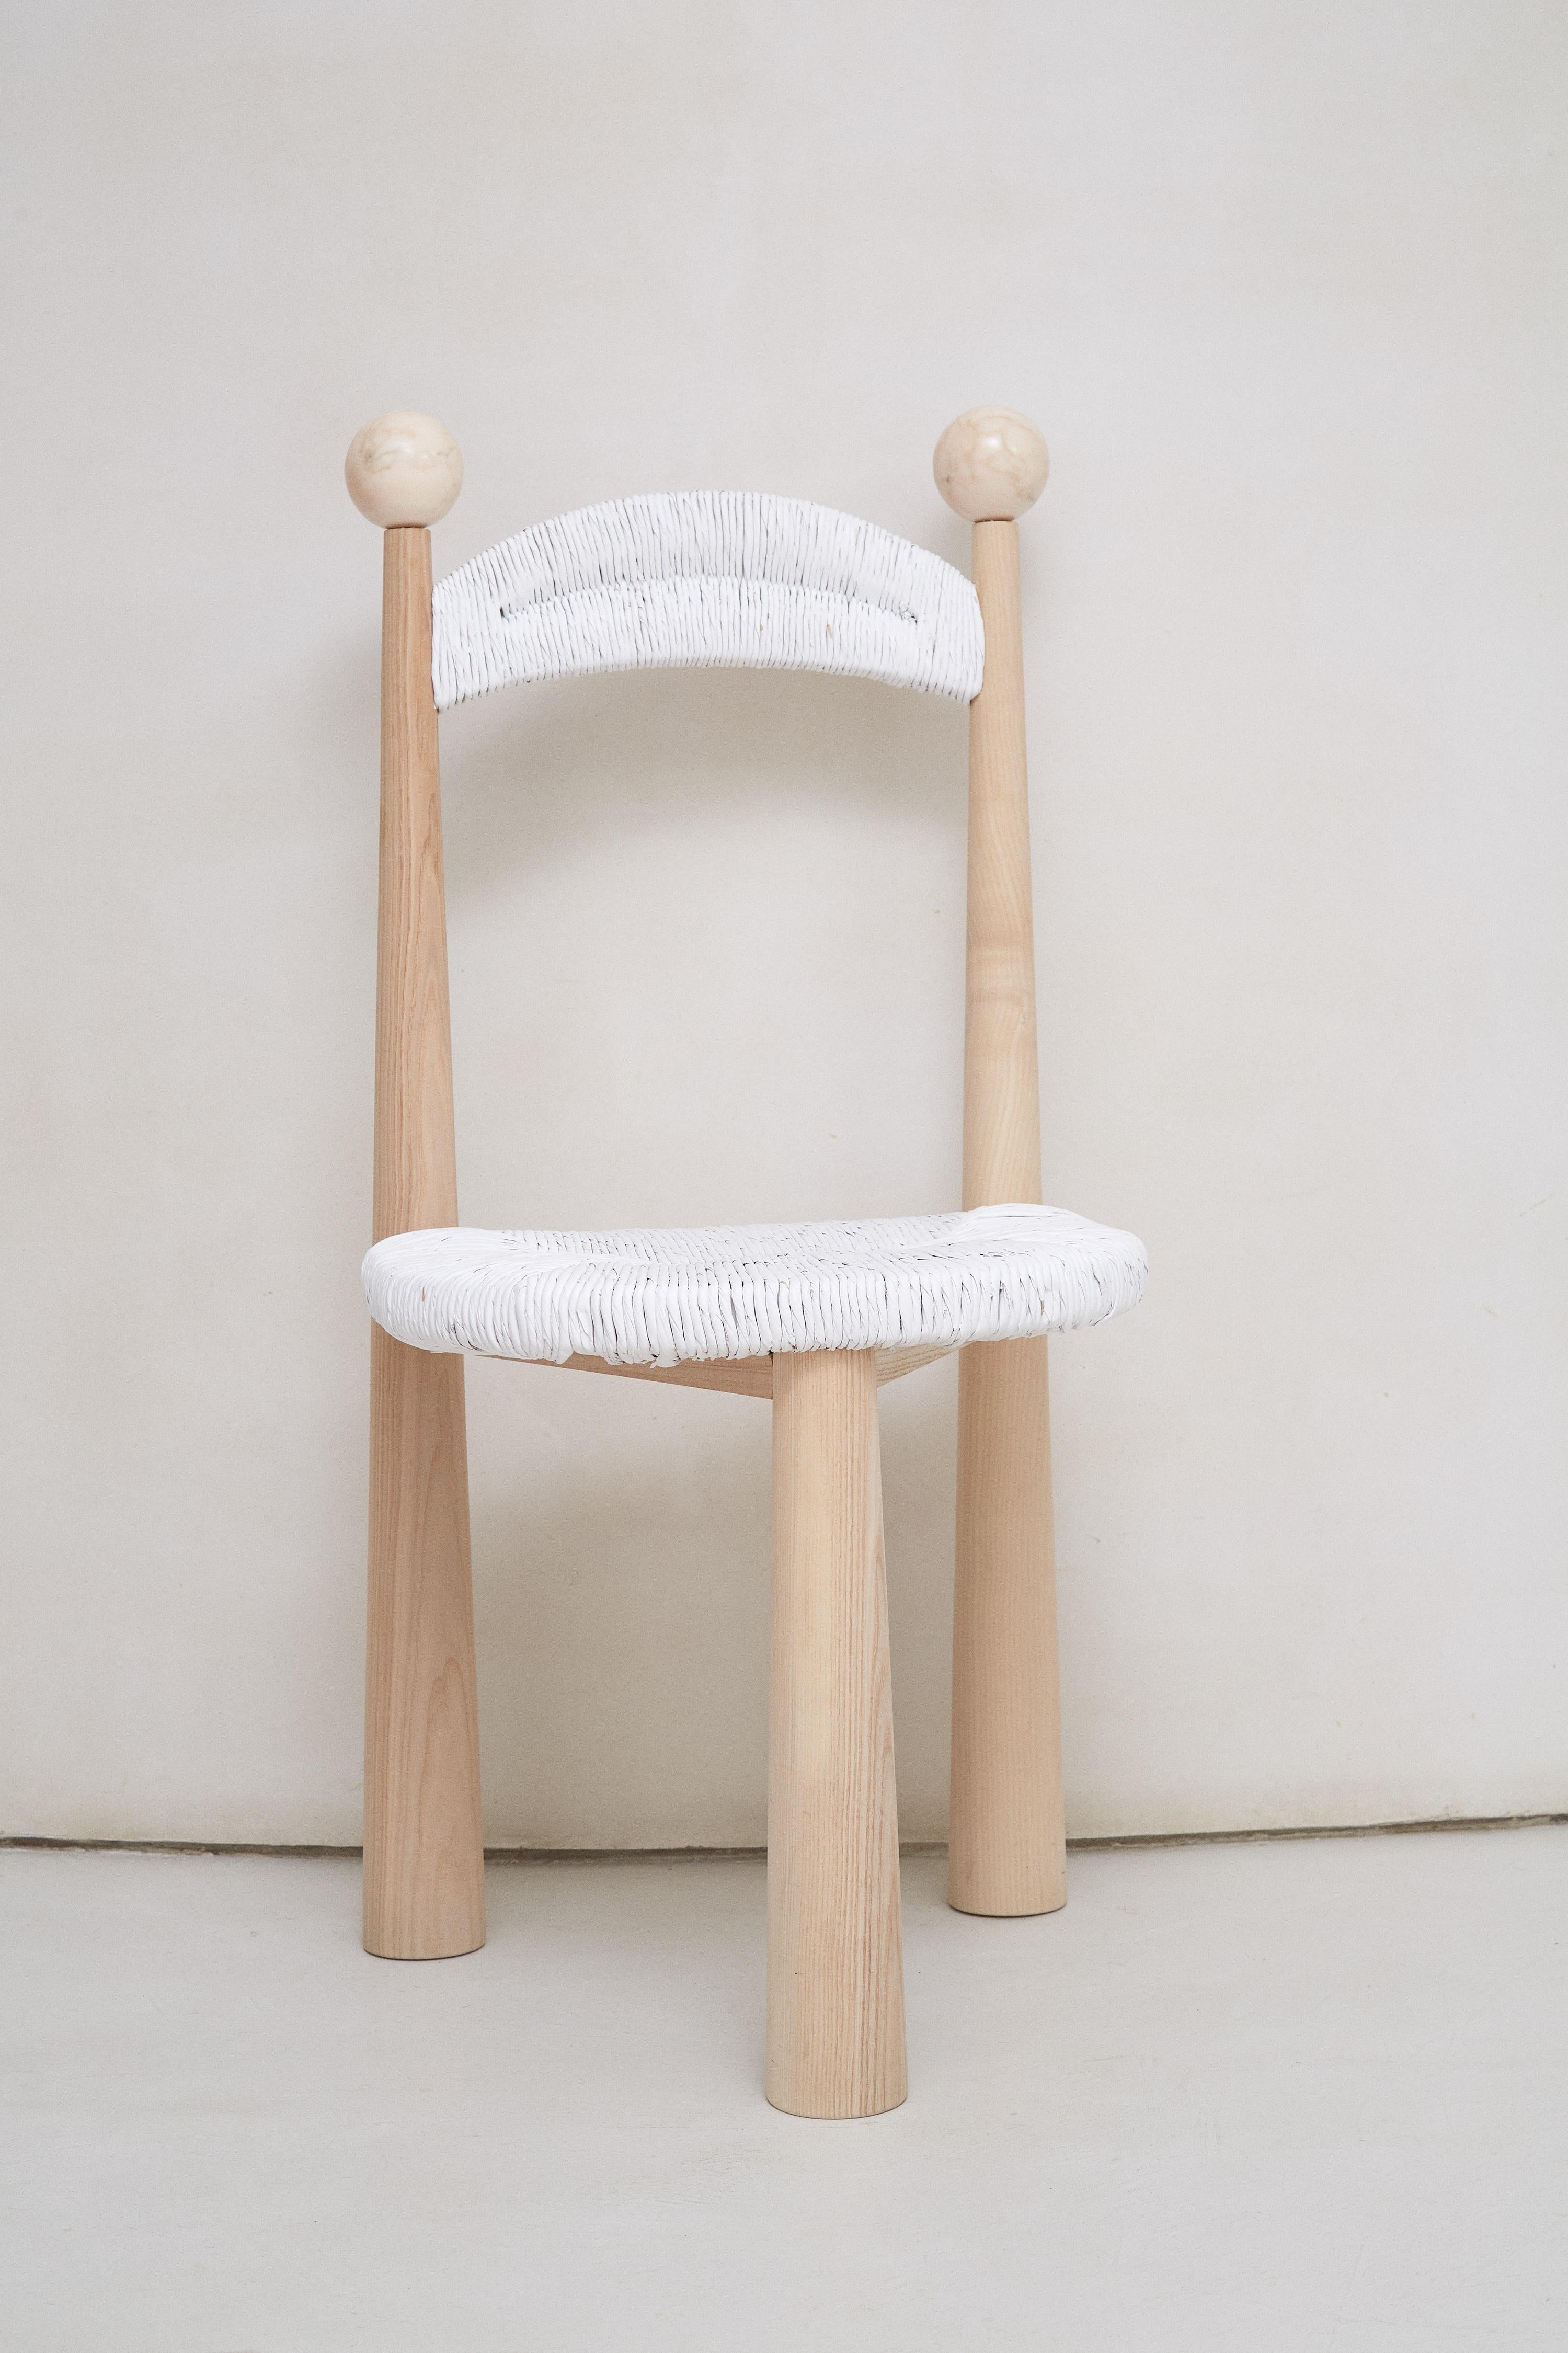 Ensemble de 2 chaises Newcastle de Patricia Bustos de la Torre
Dimensions : D 47 x L 48 x H 91 cm.
MATERIAL : Bois et peluche.

La chaise Newcastle est une chaise en bois à trois pieds avec une assise en rotin capable de transformer n'importe quelle